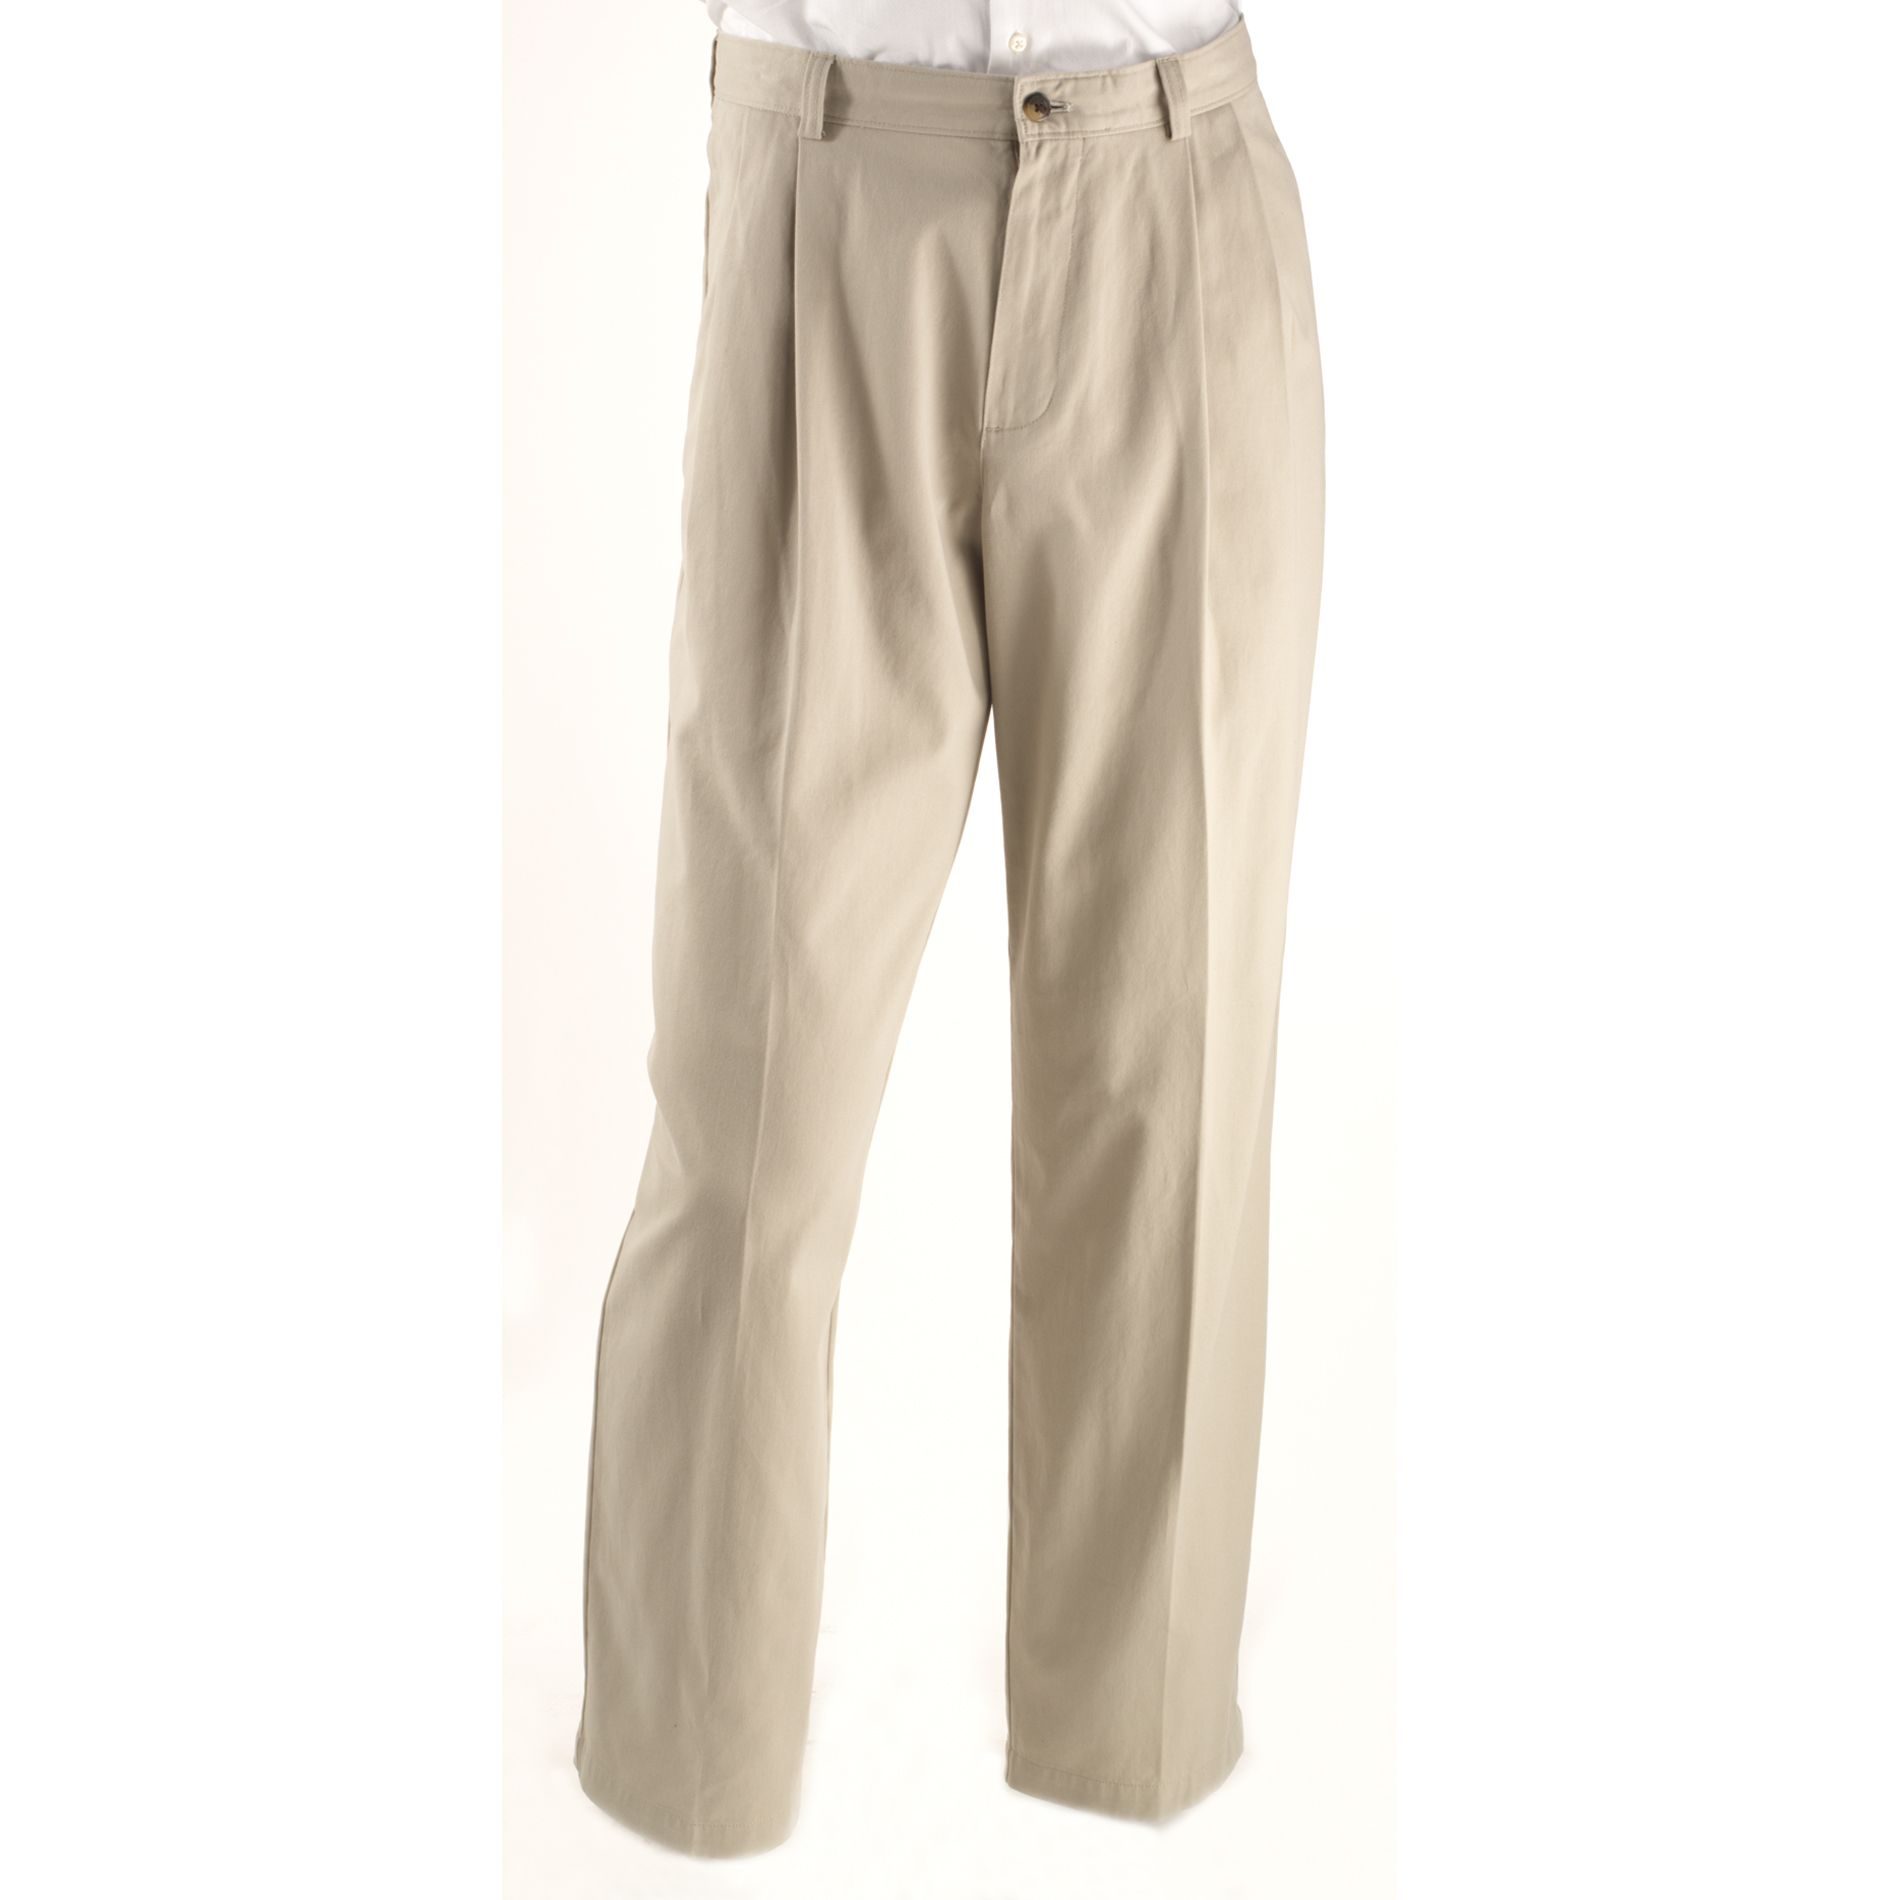 Haggar Men's Classic Pleated Khaki Pants